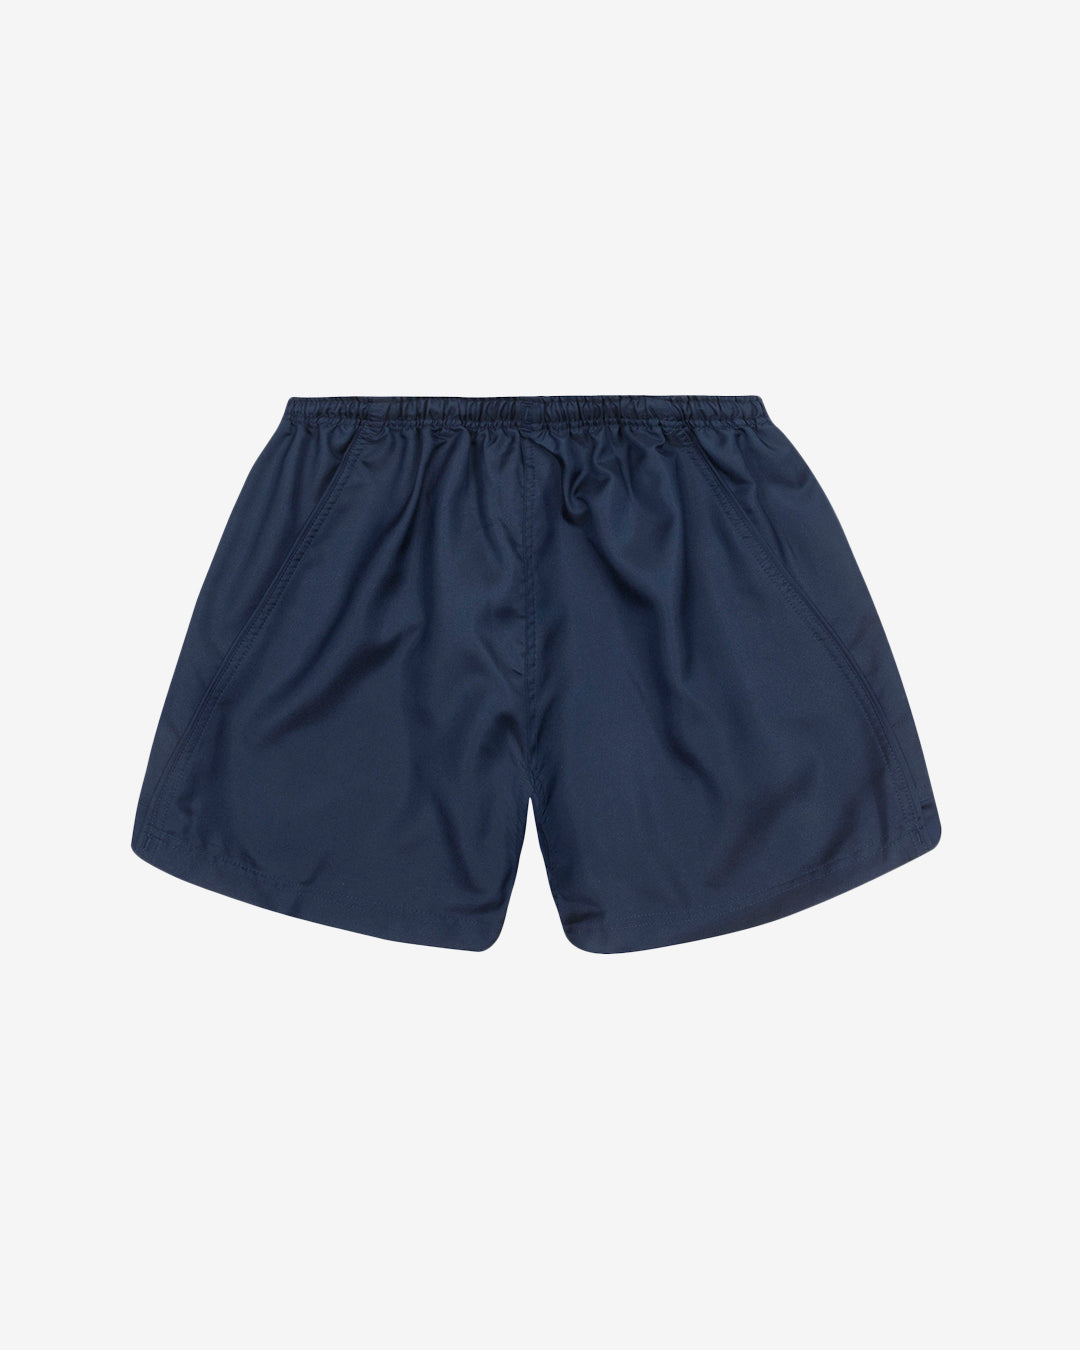 Hc: 9605 - Premier Shorts - Navy